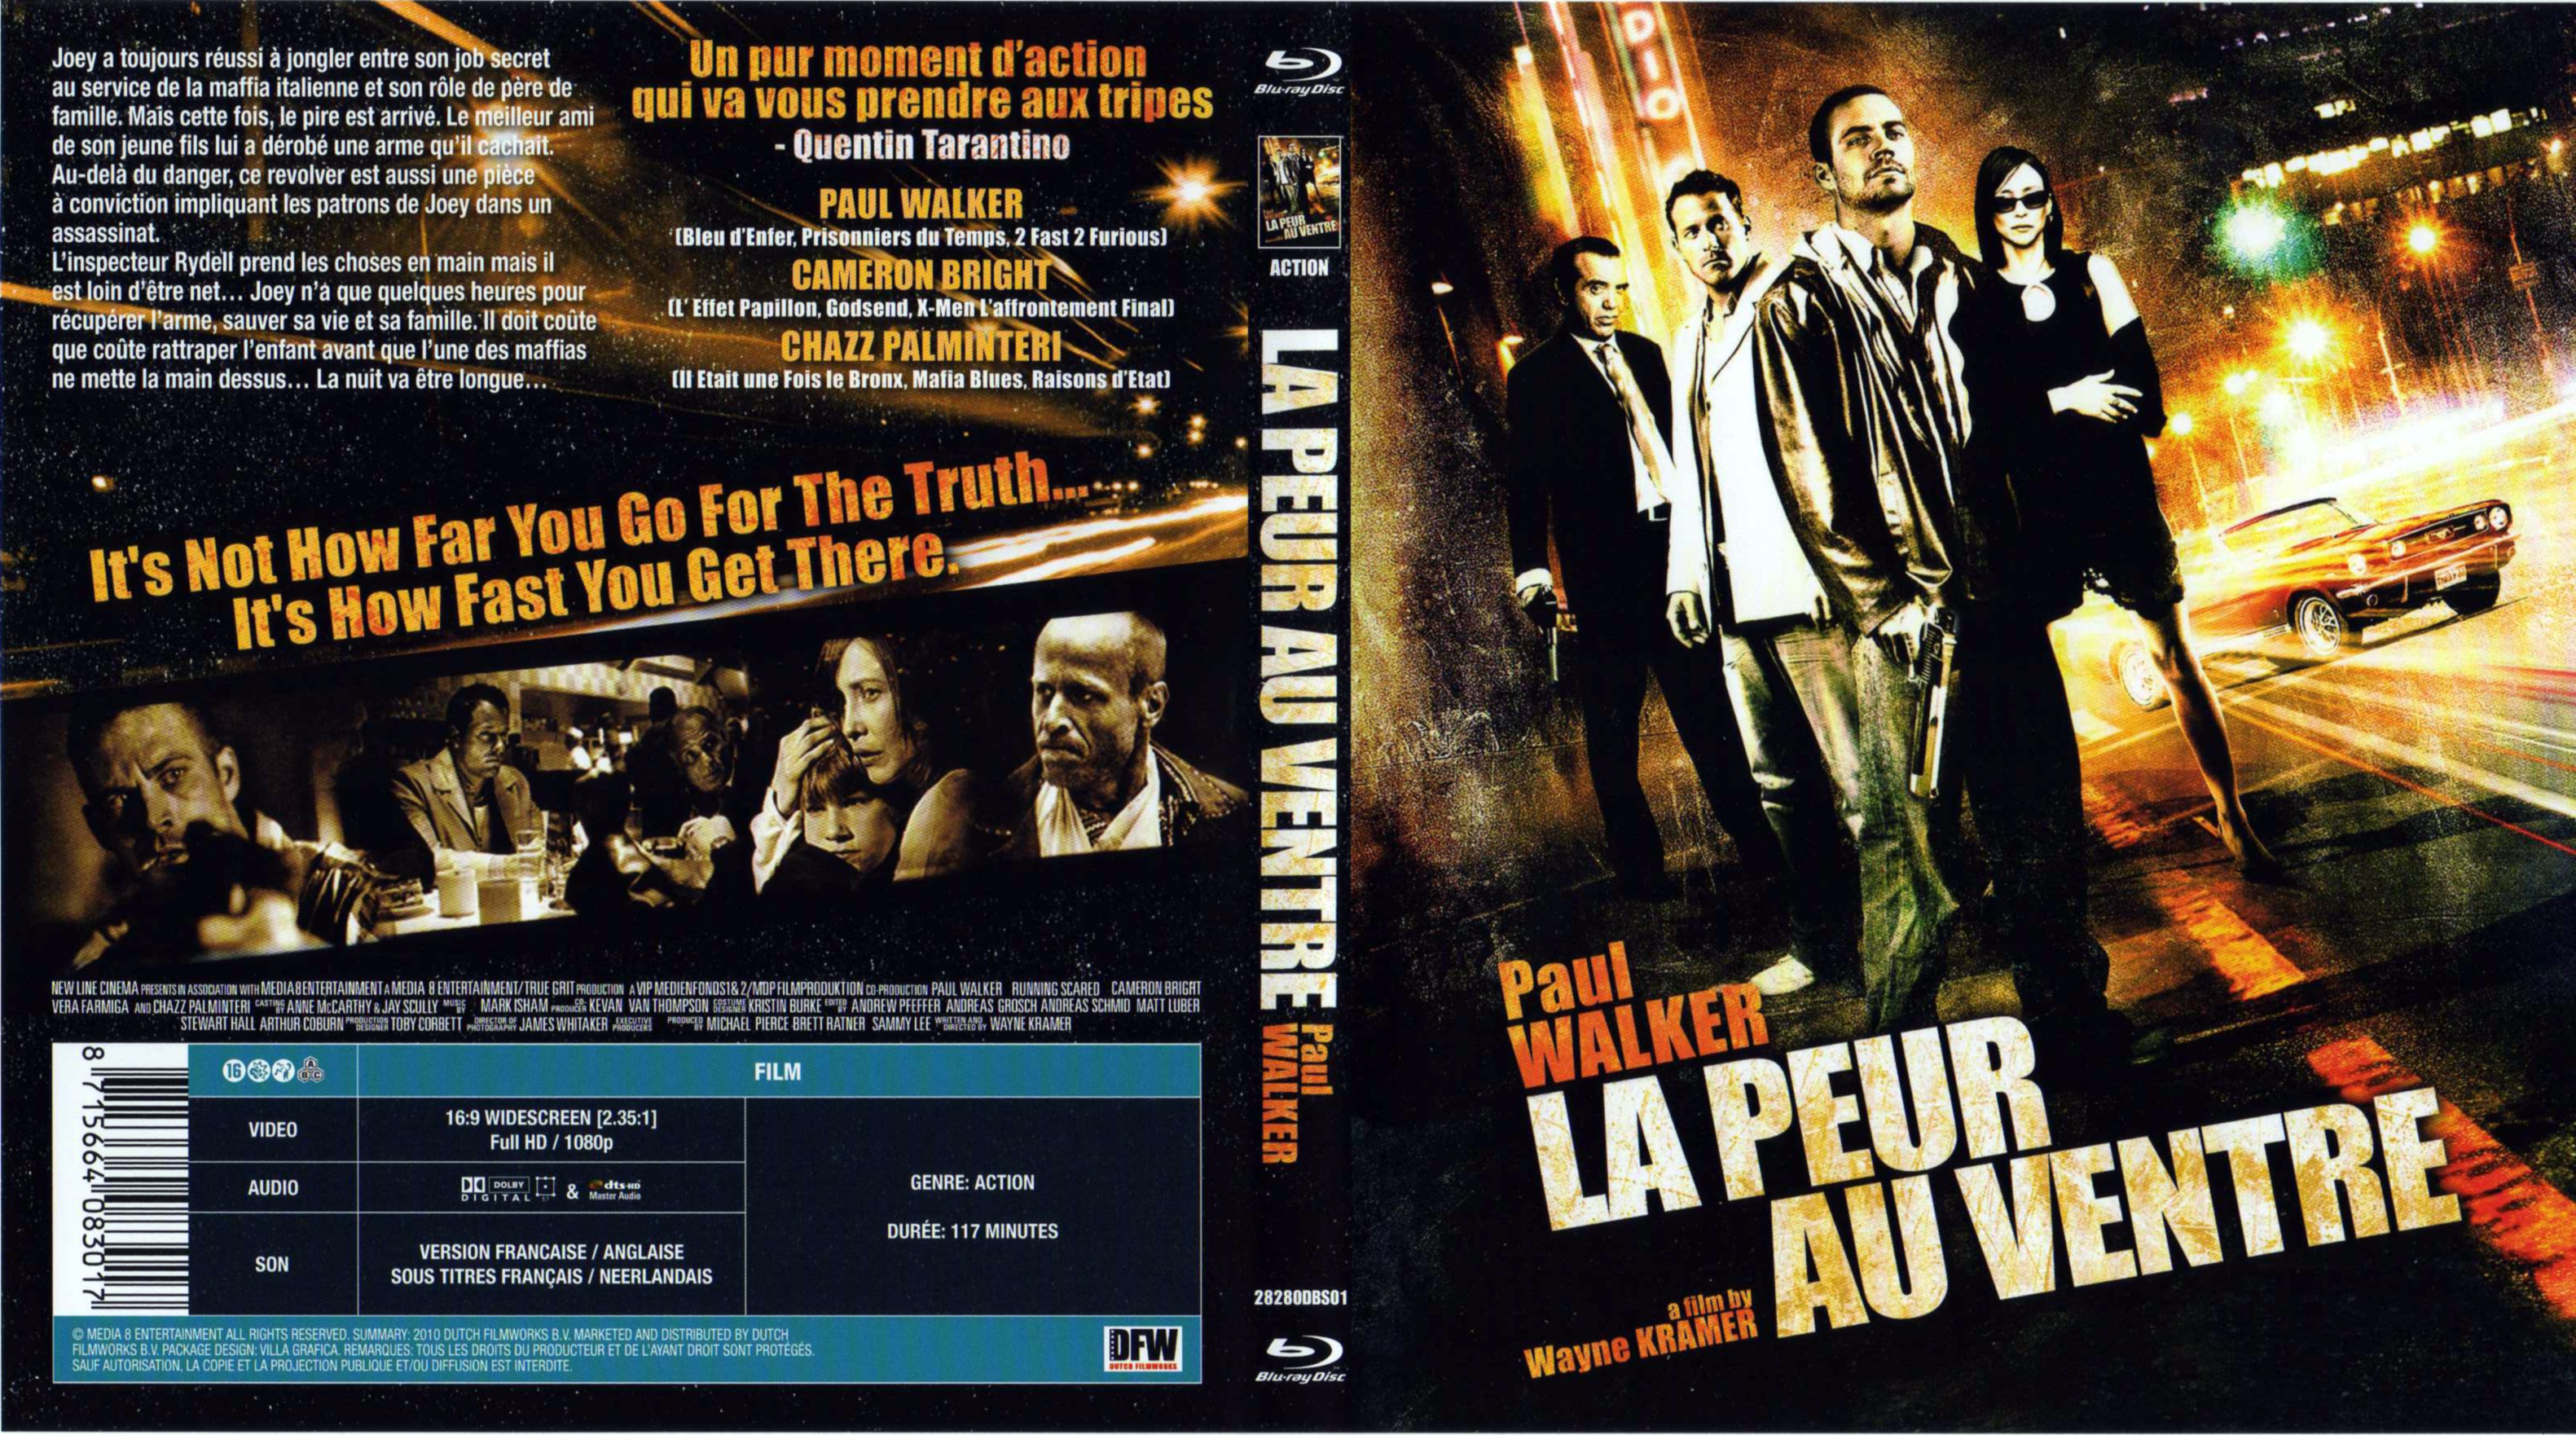 Jaquette DVD La peur au ventre (BLU-RAY)